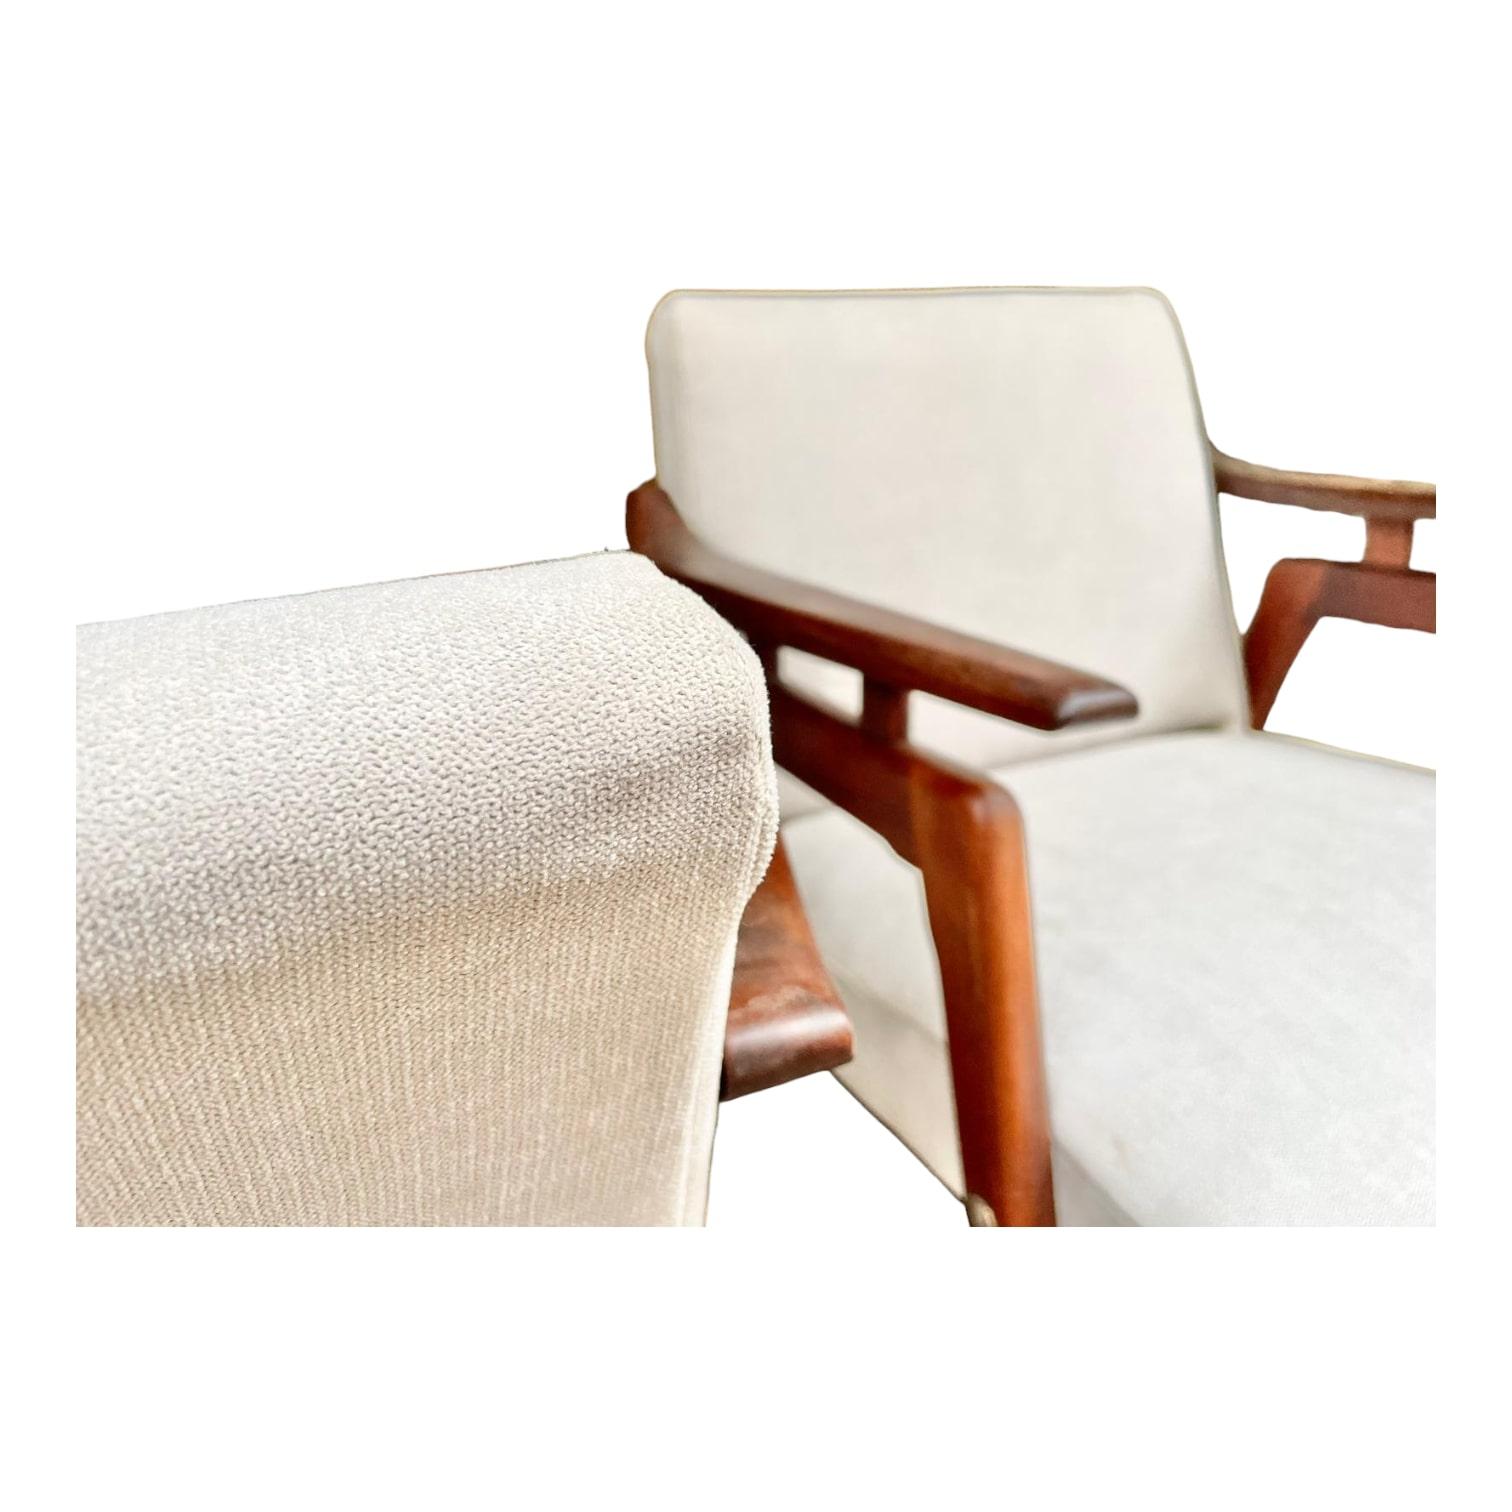 Cette superbe paire de fauteuils danois, datant des années 1960, est une pièce de collection unique. Son design intemporel et sa hauteur d'assise de 39 cm en font un meuble à la fois élégant et confortable. Les images détaillées vous permettront